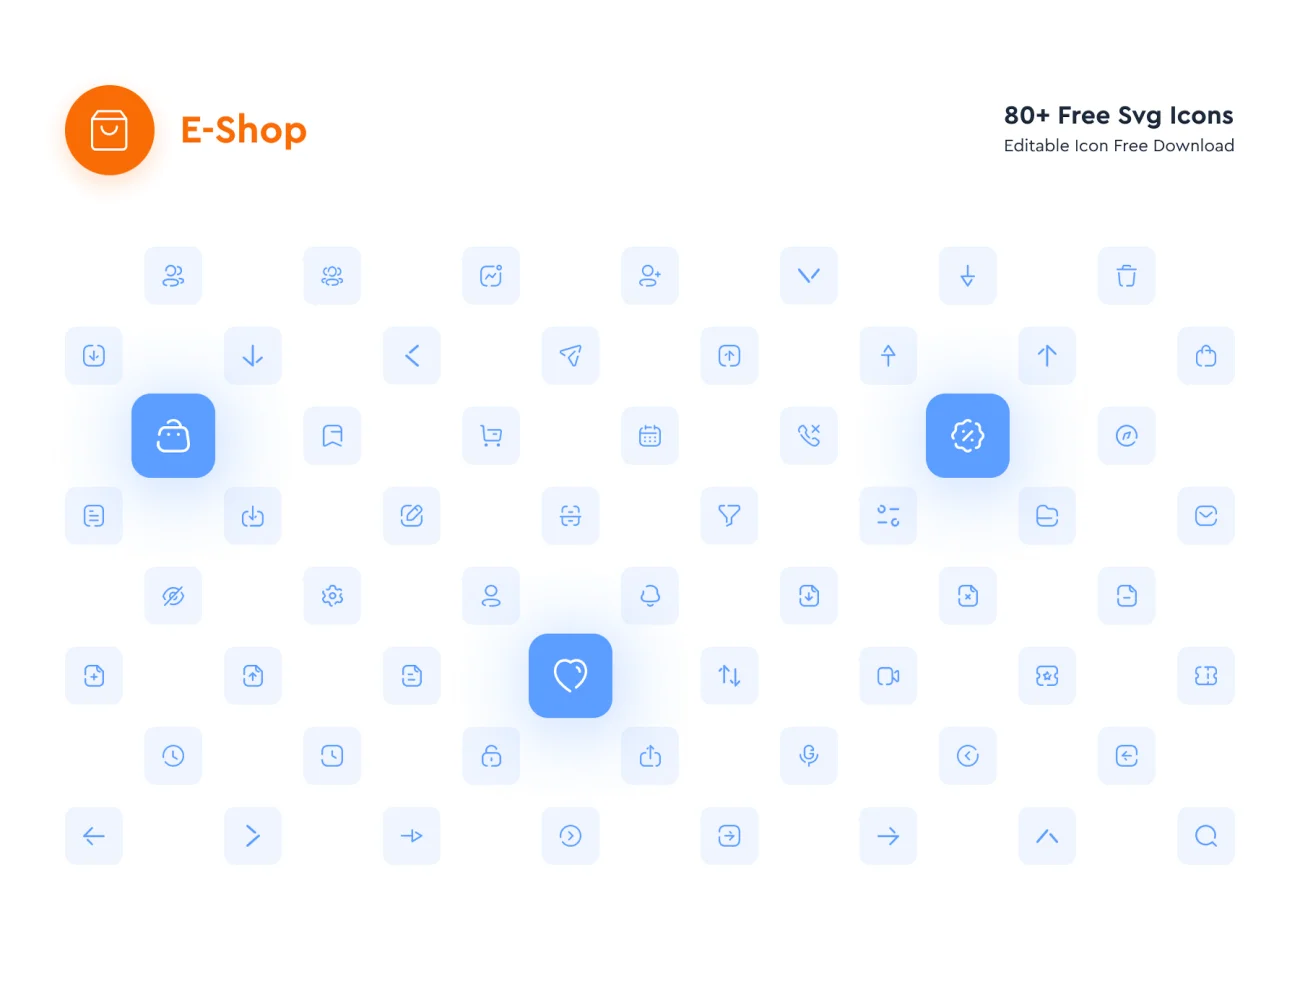 25屏科技数码潮流鞋帽电子商务移动应用UI设计套件 Eshop E-Commerce Mobile App UI Kit .sketch .xd .figma插图9